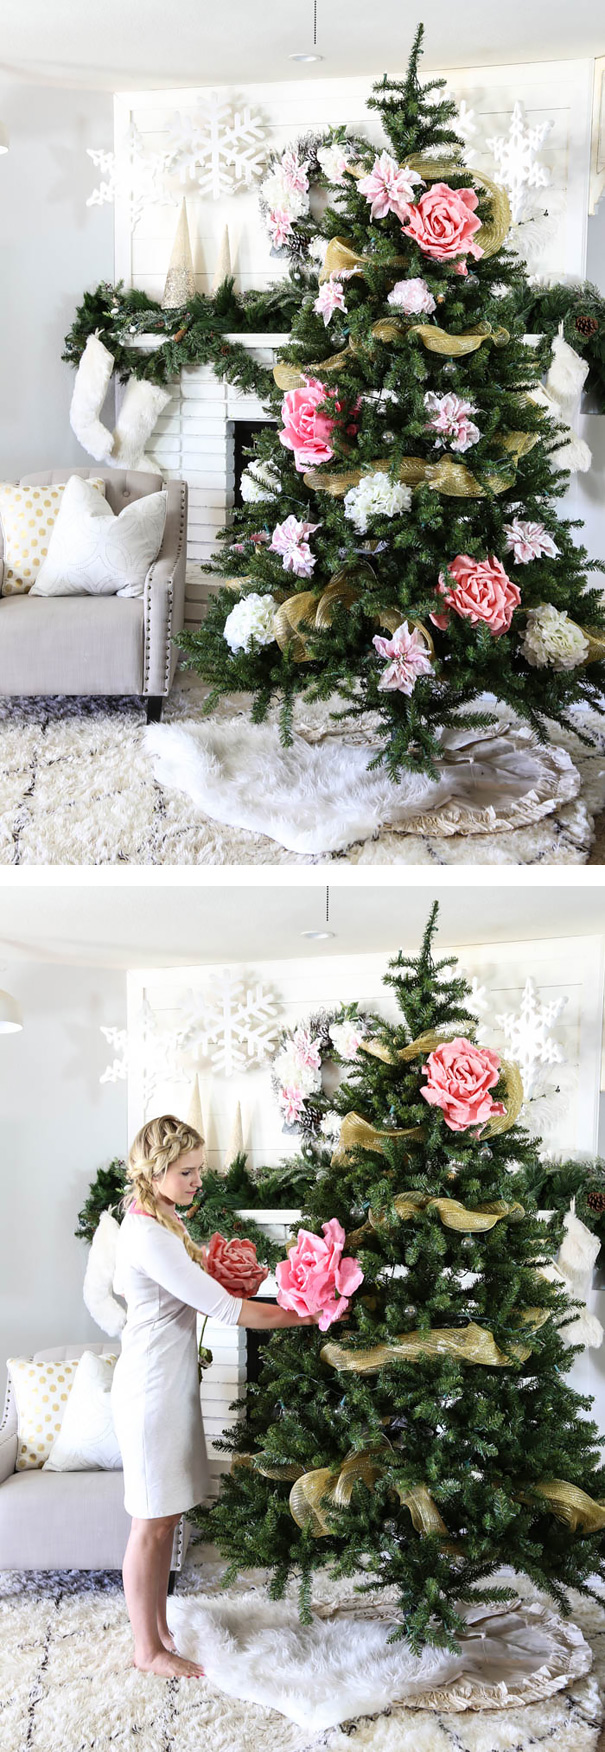 arbolito de navidad con decoración floral